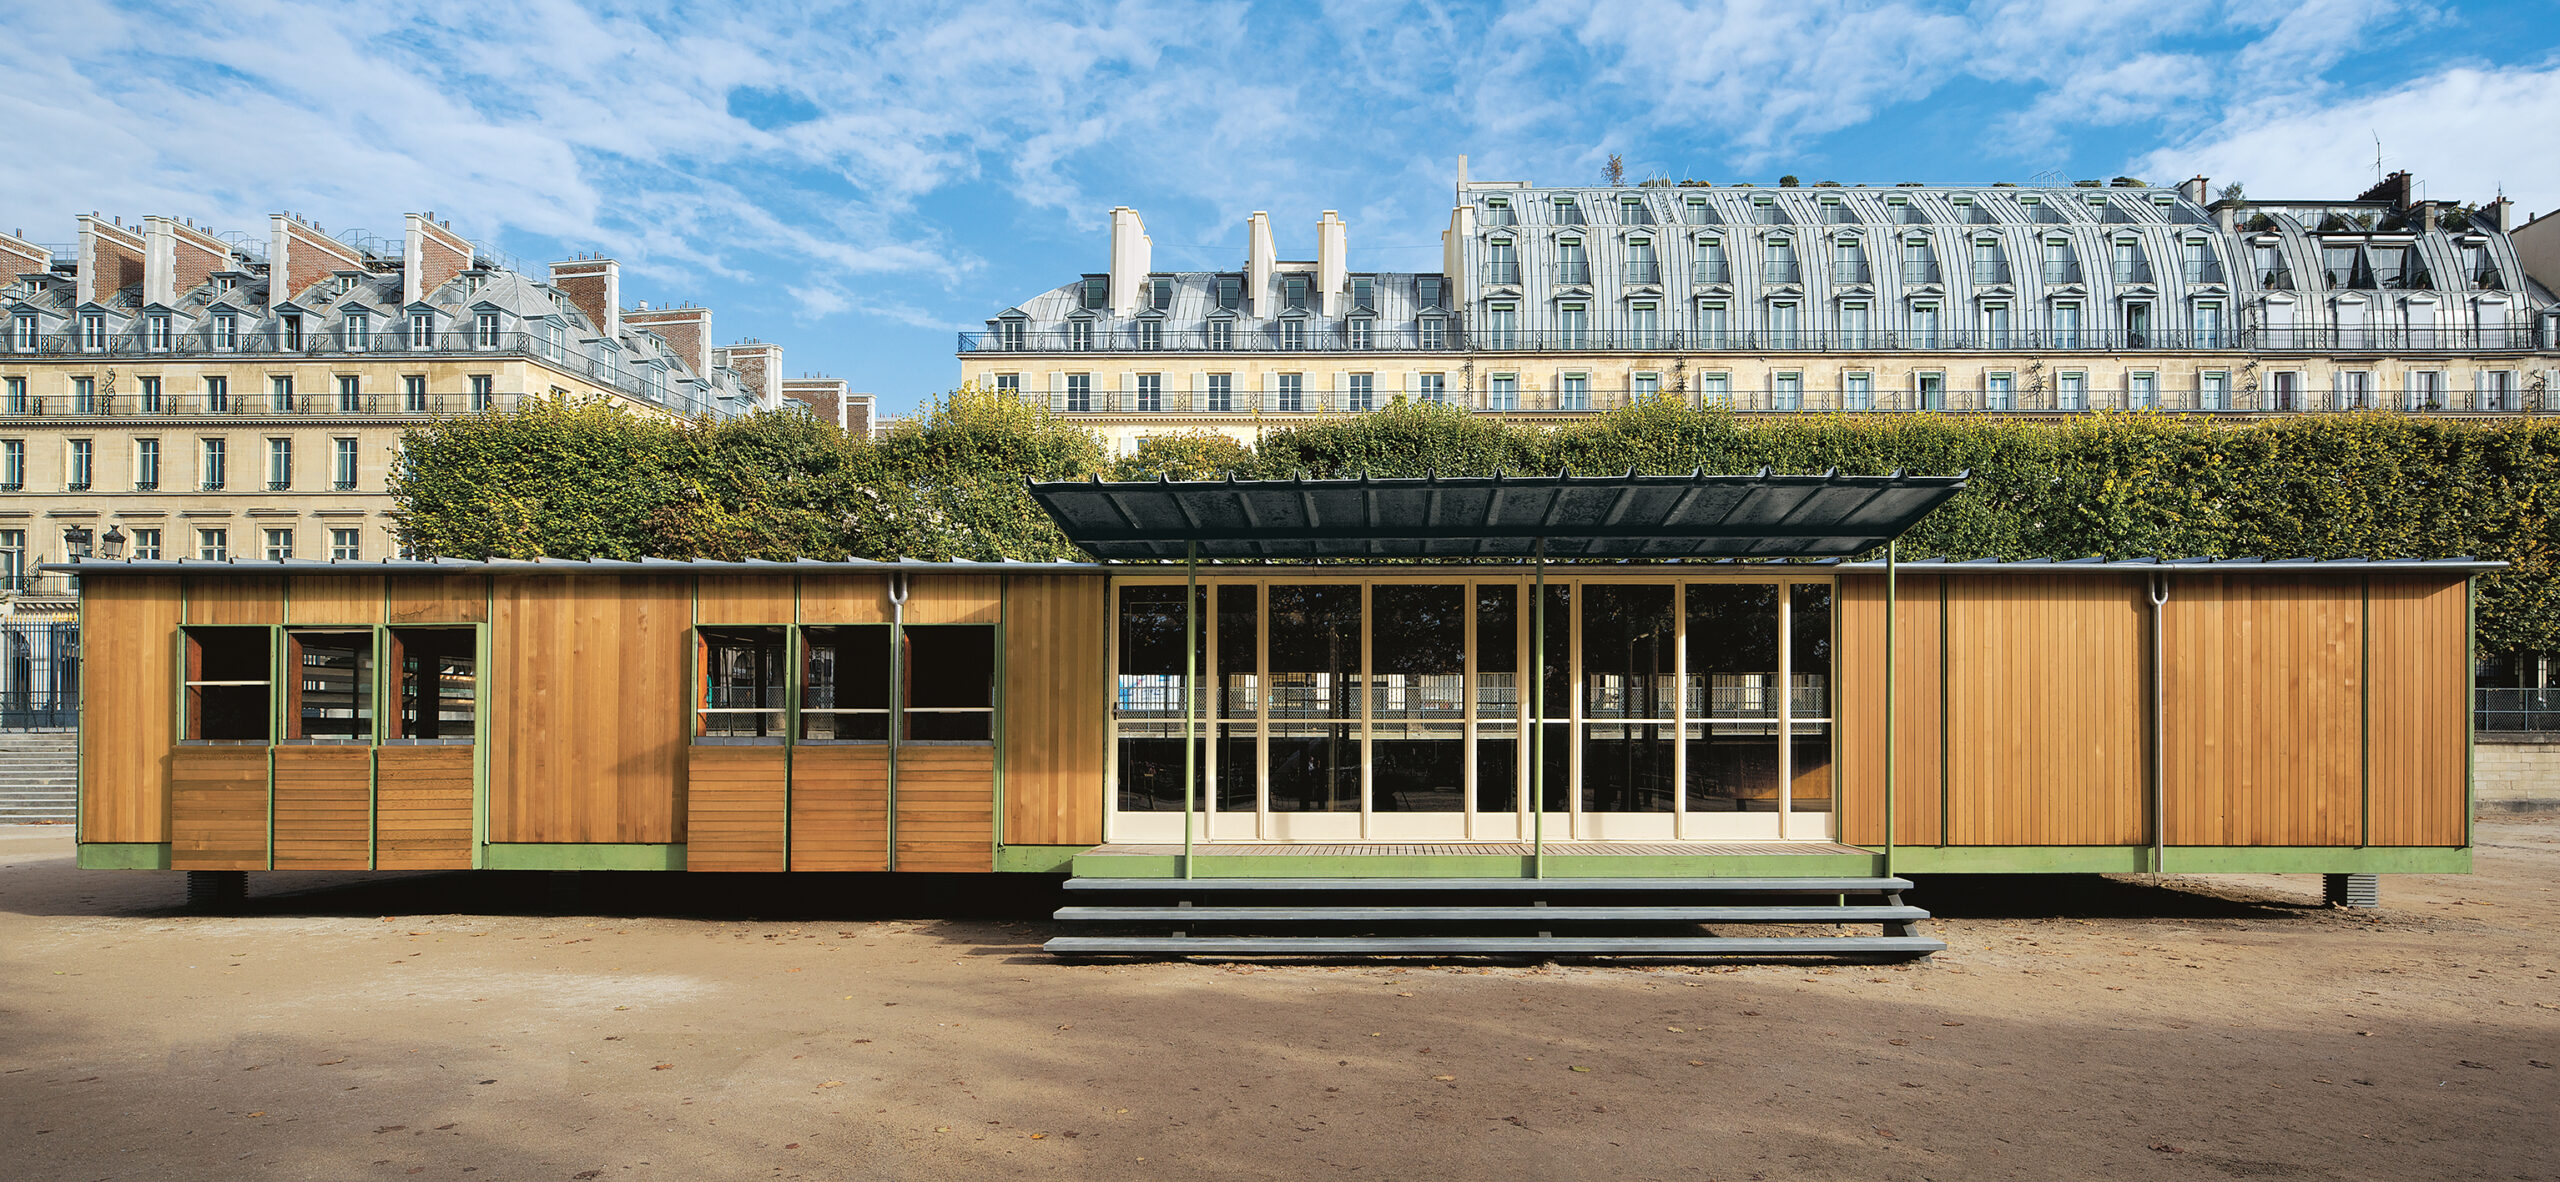 Maison Ferembal, Nancy, 1948. Adaptation Jean Nouvel, remontée au Jardin des Tuileries, Paris, 2010.